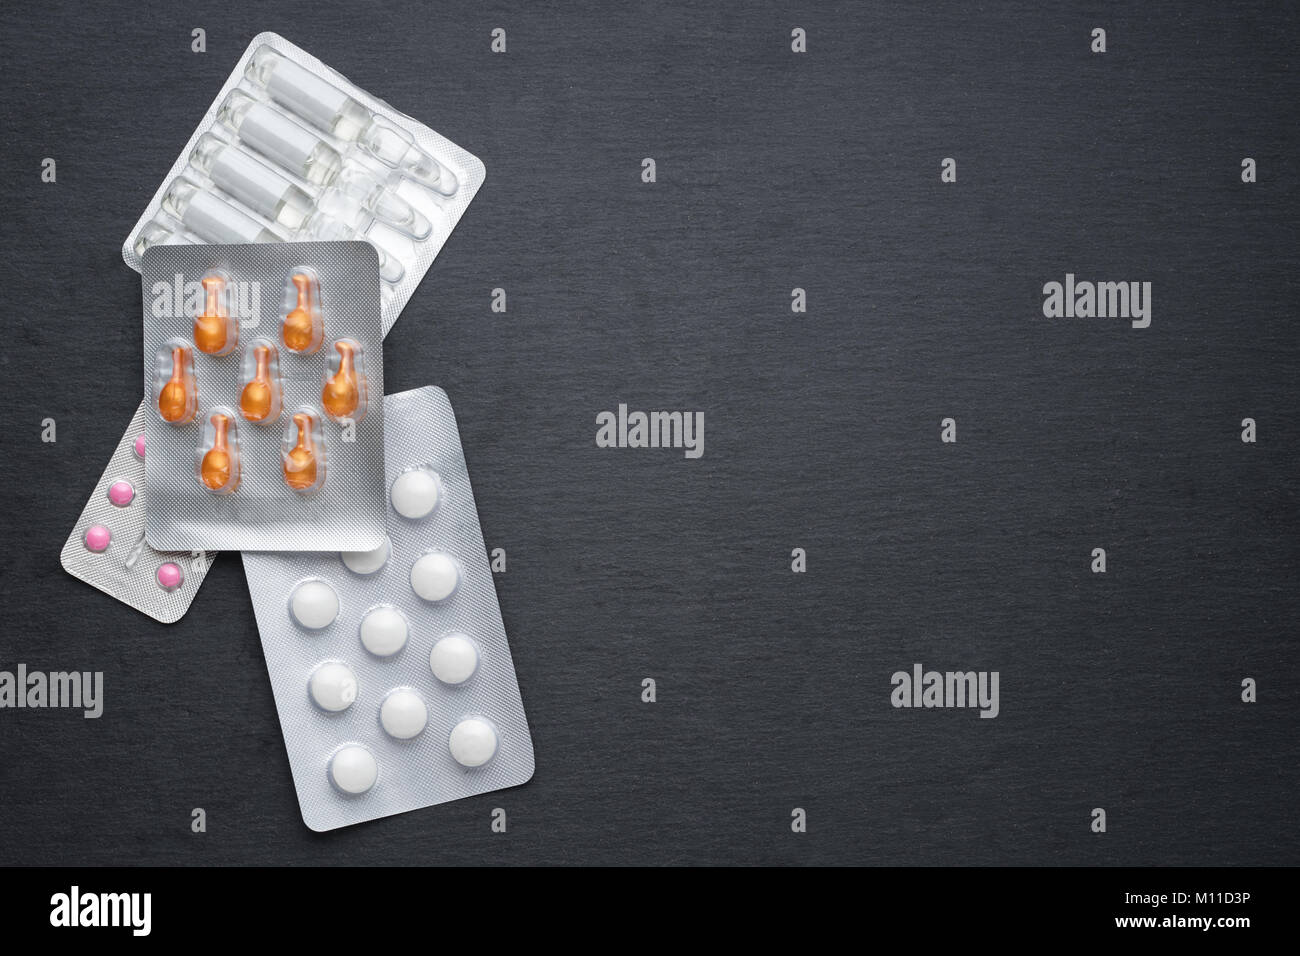 Verschiedene Tabletten, Kapseln und Ampullen auf Schiefer. Medikamente für die Behandlung, Health Care Konzept Stockfoto